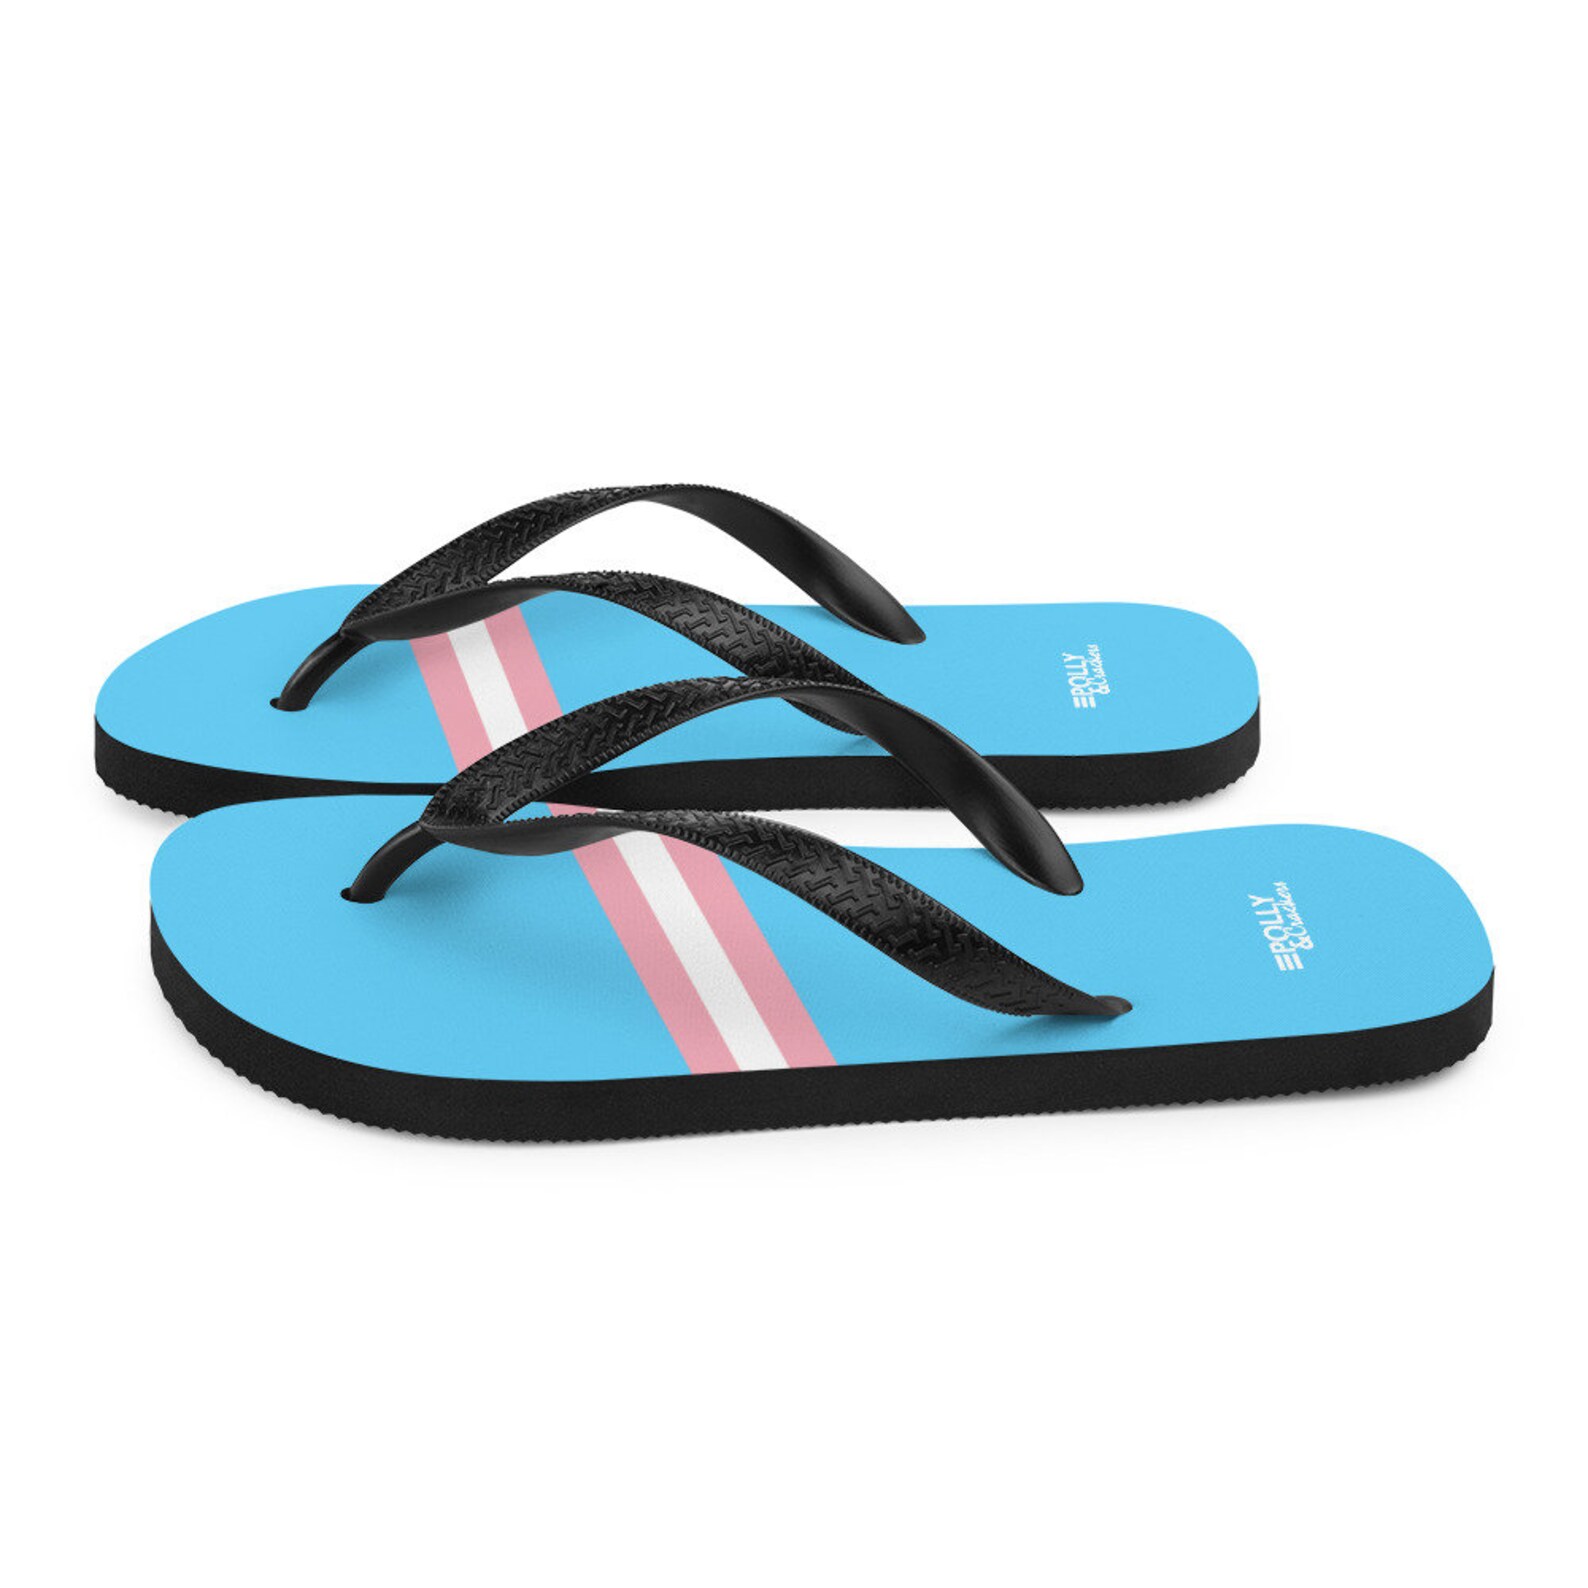 Transsexual Pride Flip Flops / Trans Pride Flip Flops / Blue - Etsy UK